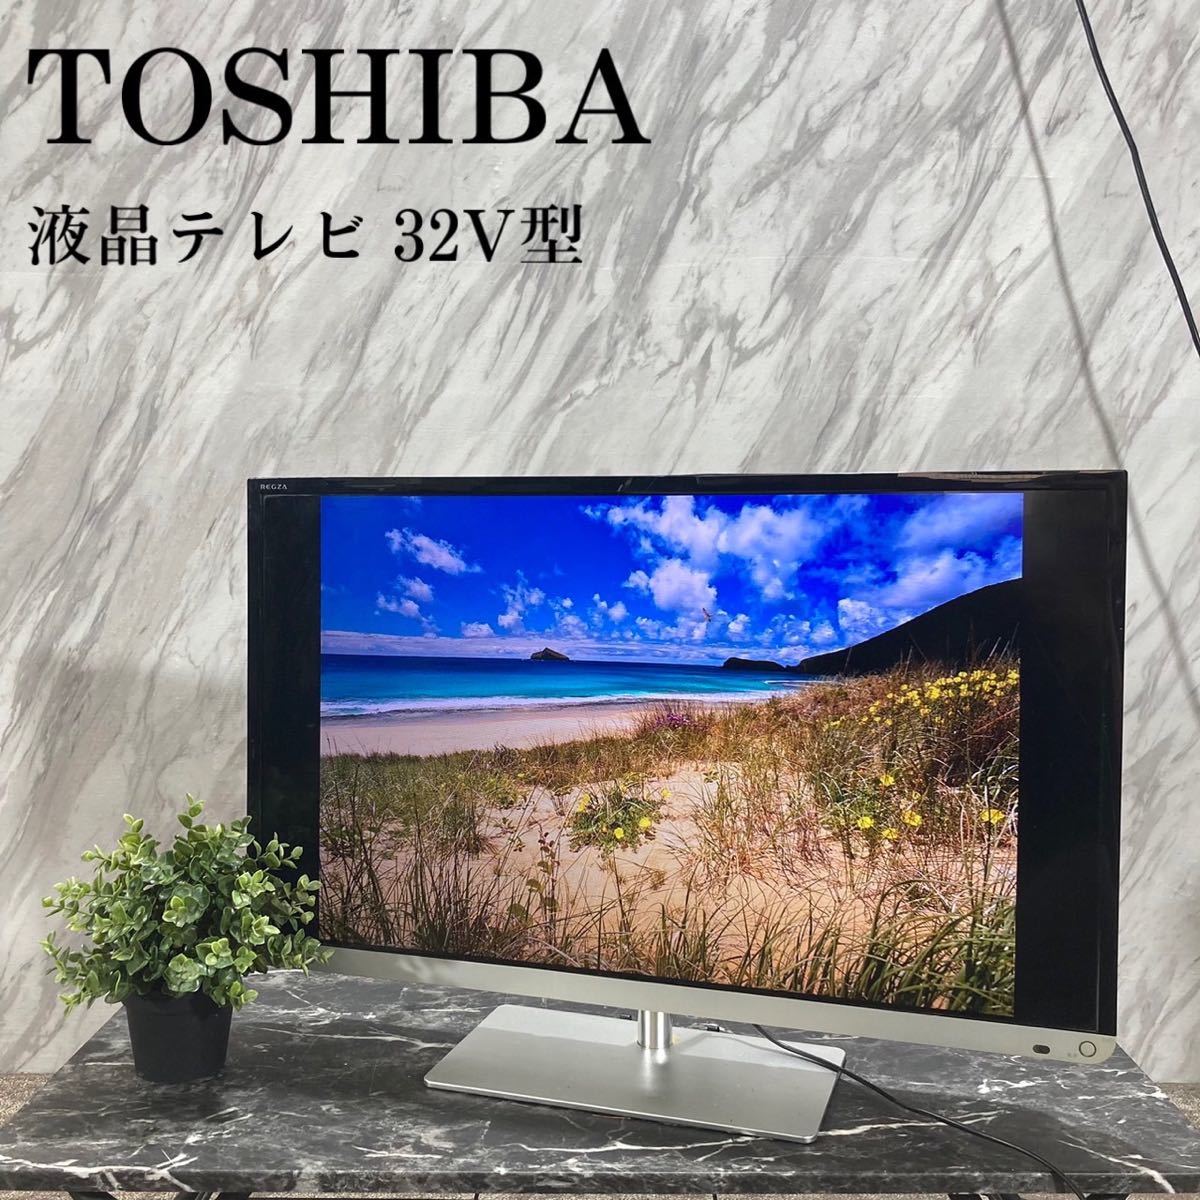 芸能人愛用 32J7 液晶テレビ 東芝 TOSHIBA 32V型 L047 家電 REGZA 液晶